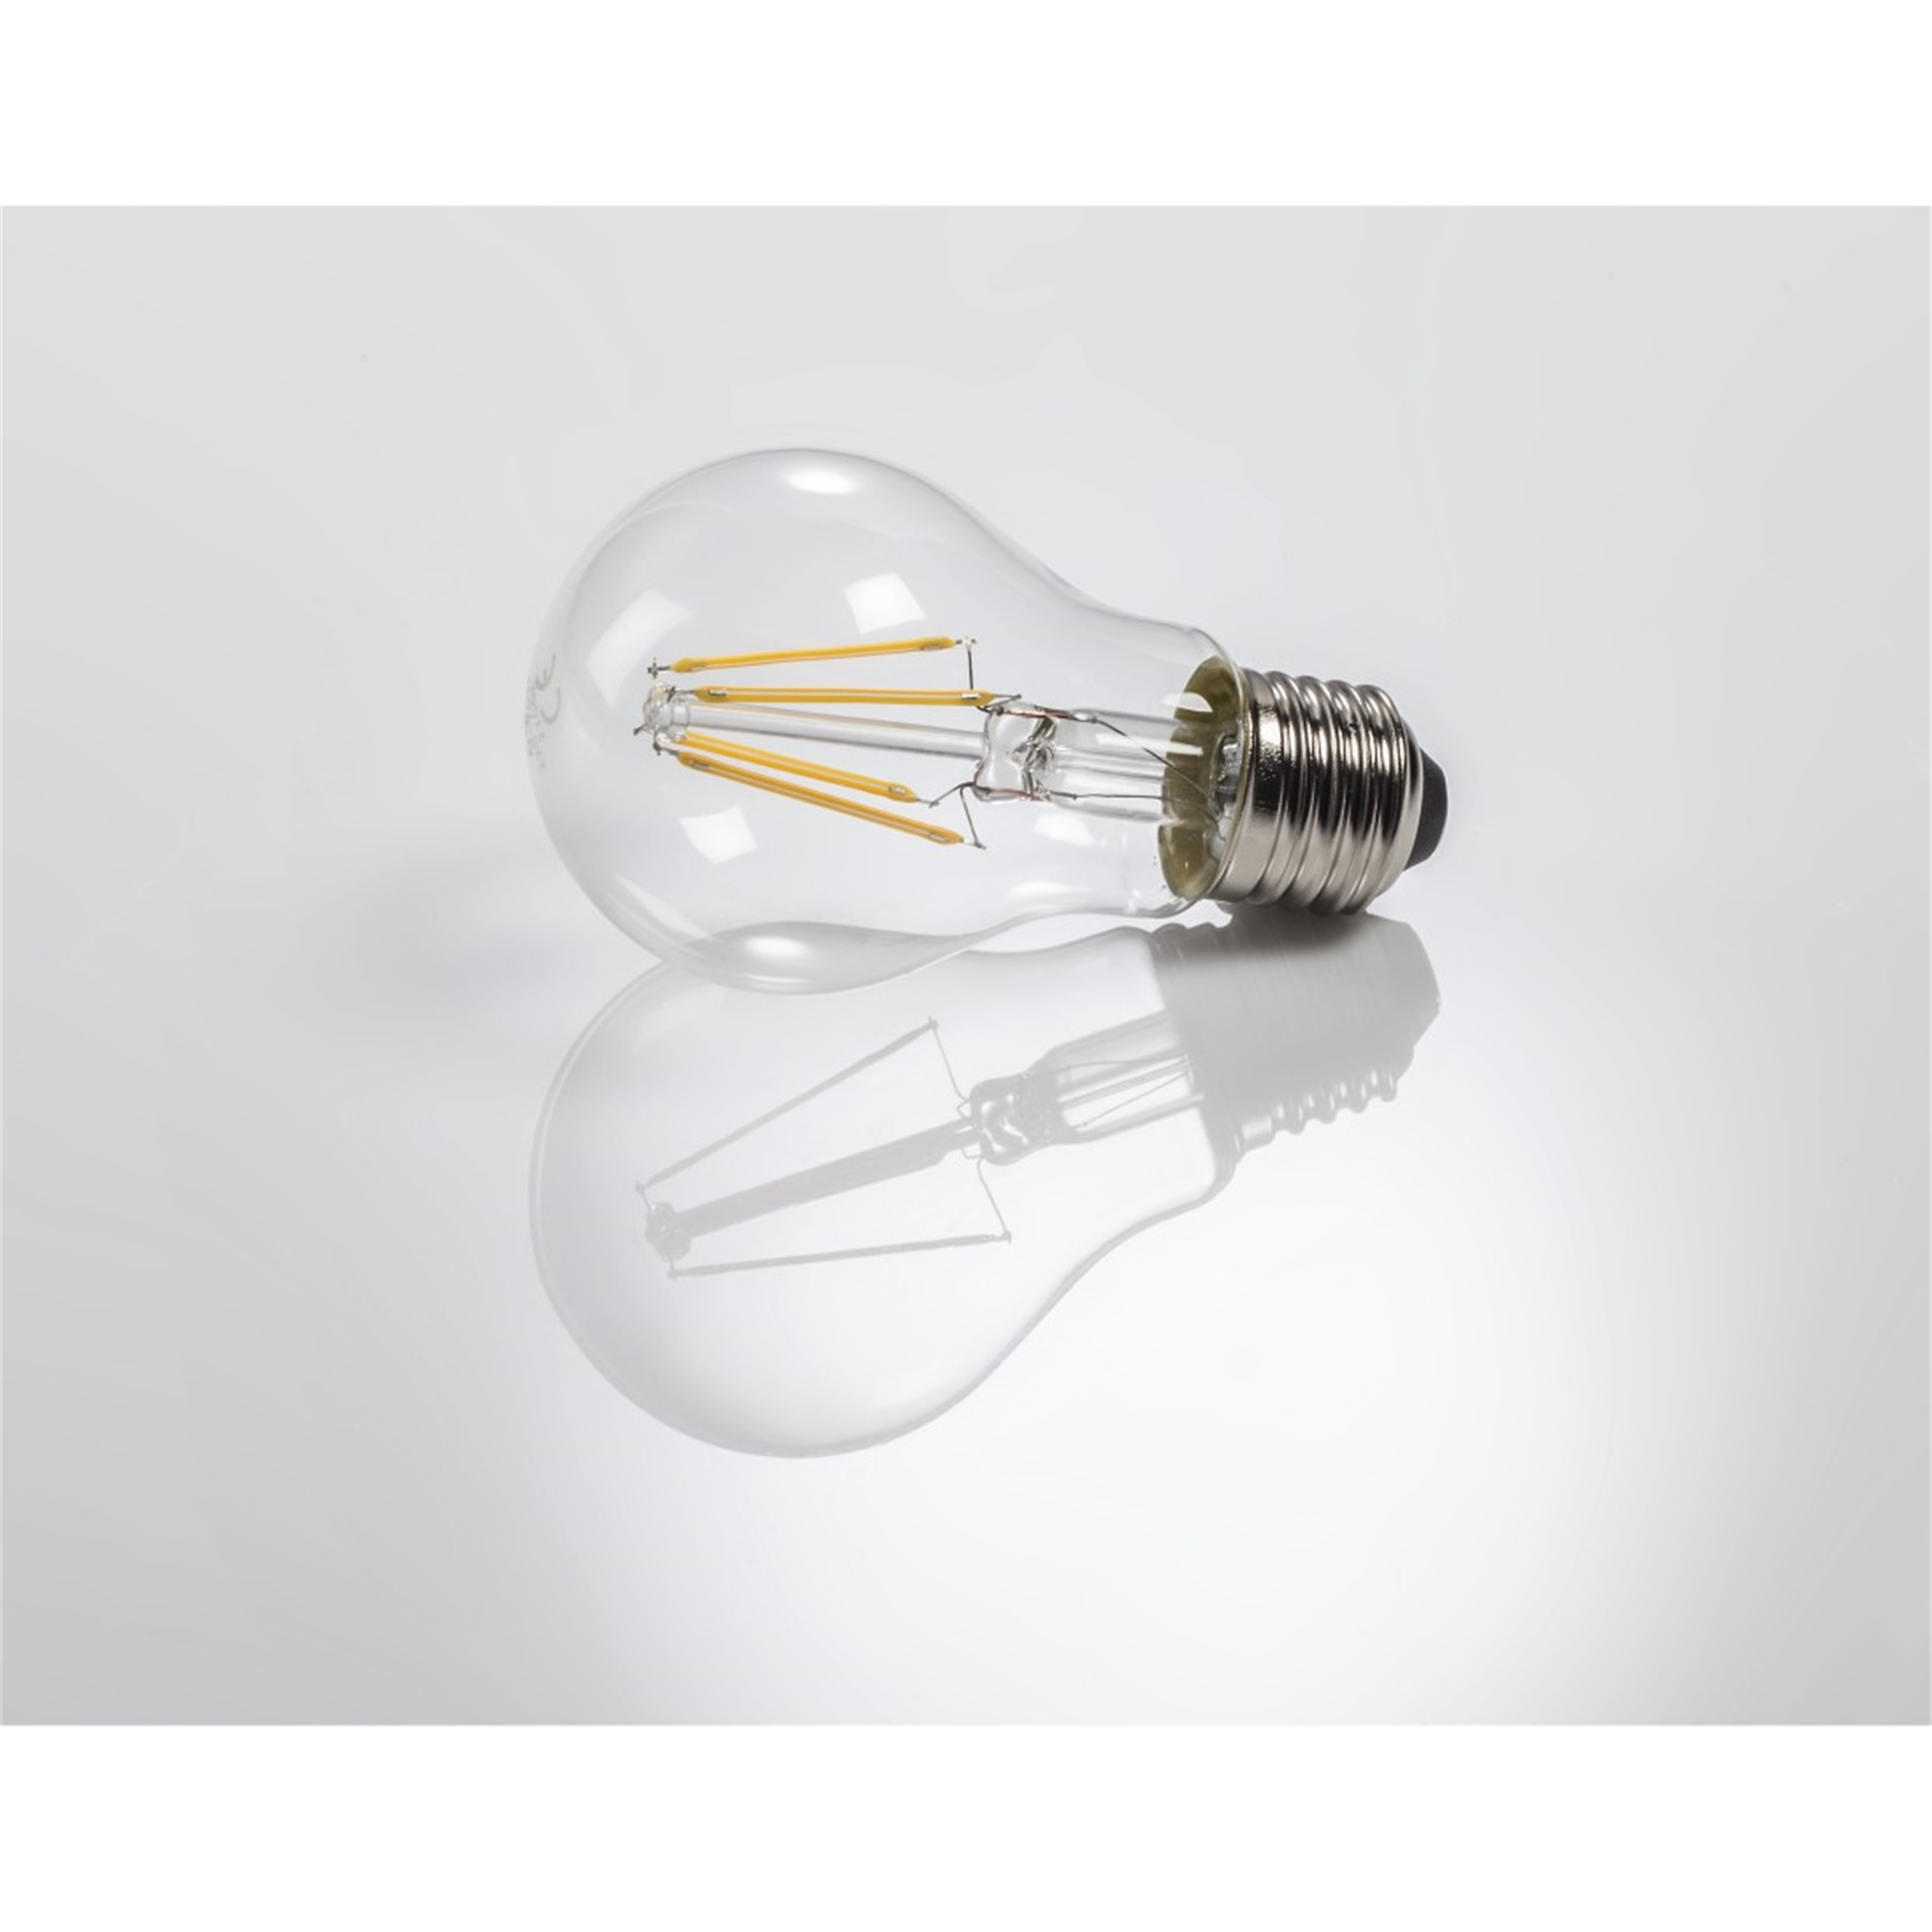 XAVAX E27, 806lm ersetzt 60W E27 LED-Lampe Warmweiß